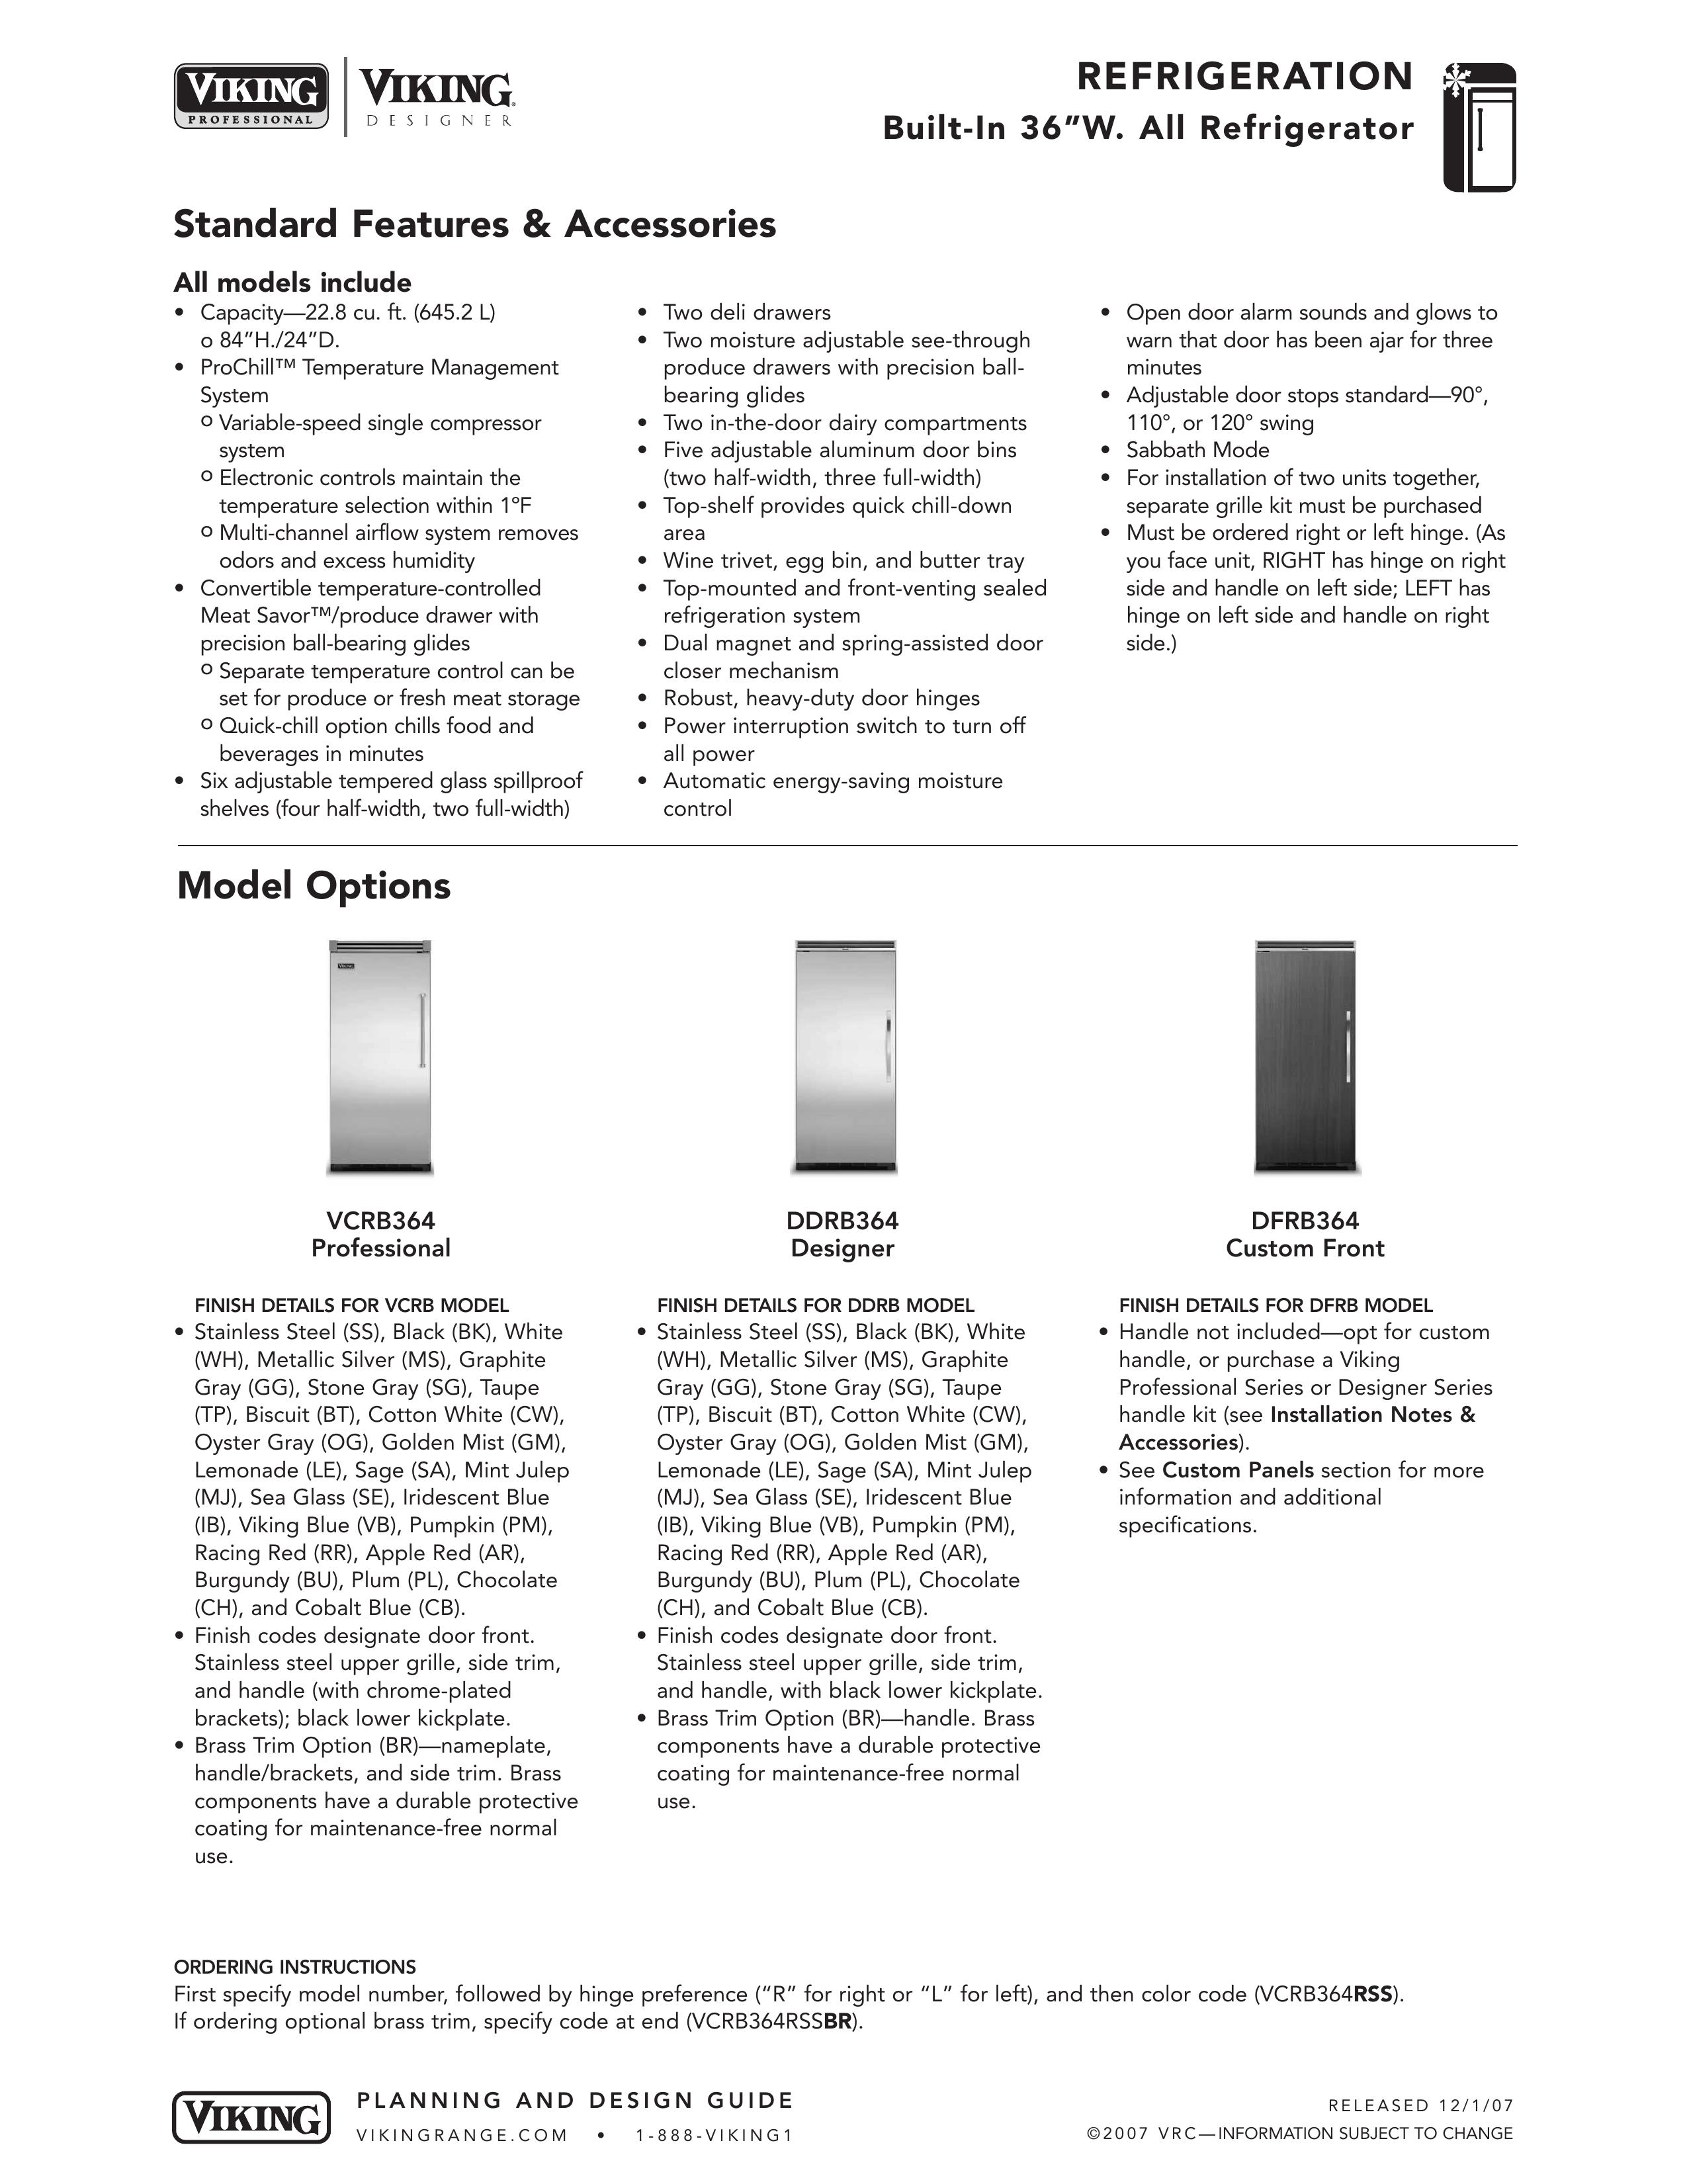 Viking DFRB364 Refrigerator User Manual